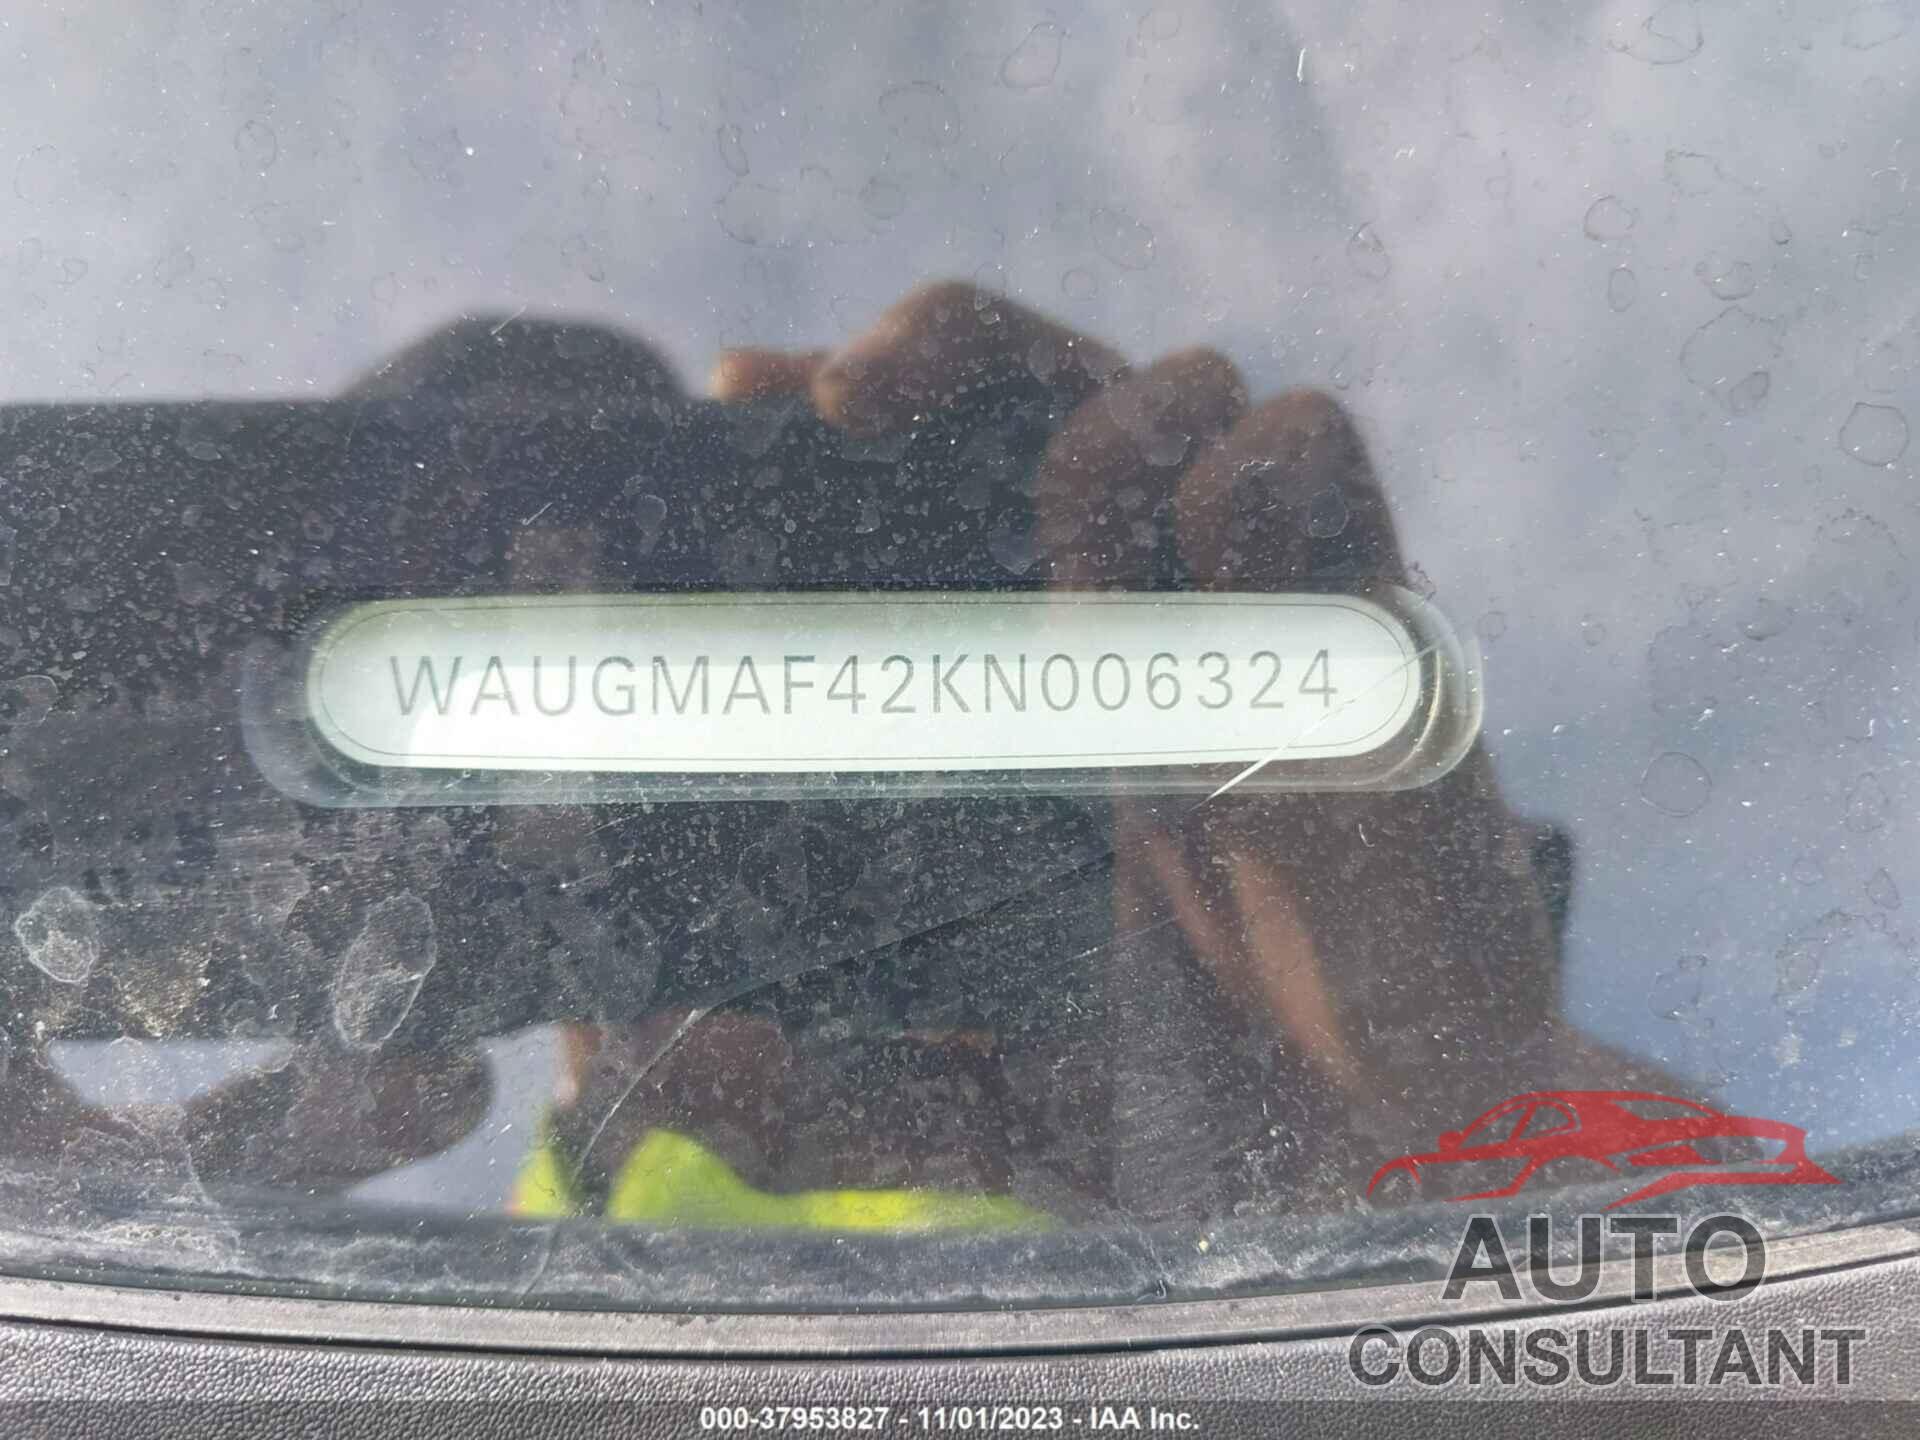 AUDI A4 2019 - WAUGMAF42KN006324